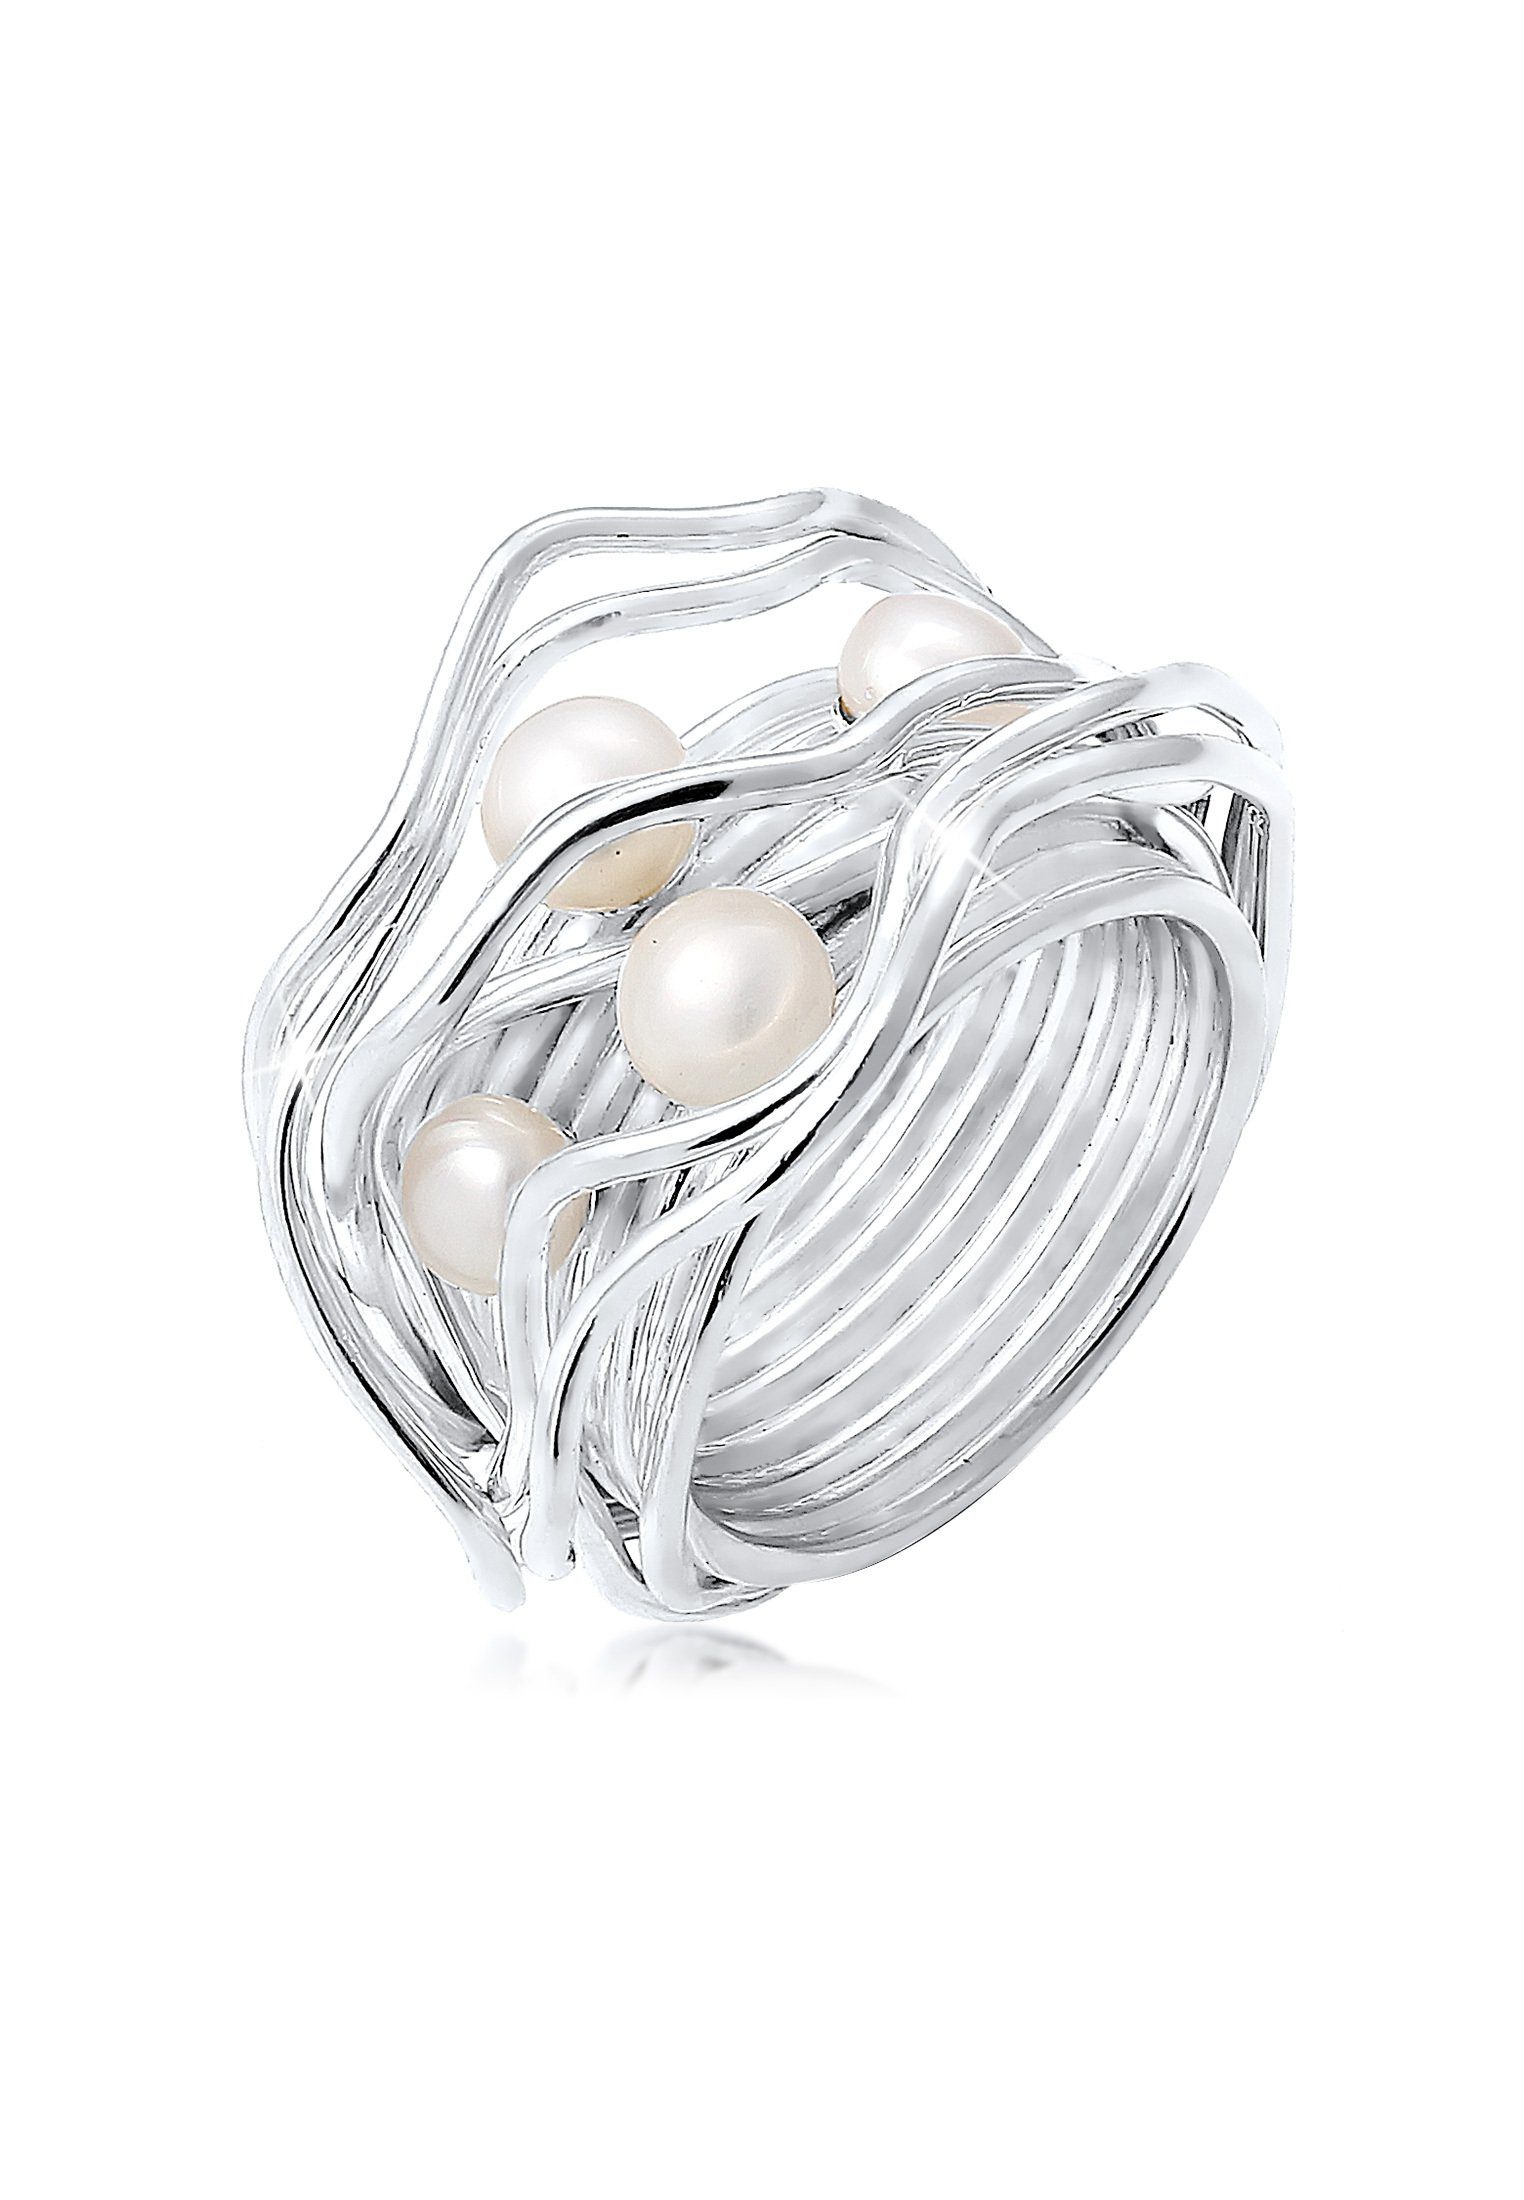 Perlen Süsswasserperlen Ring 925 Silber im modischen Design SONDERPREIS NEU 